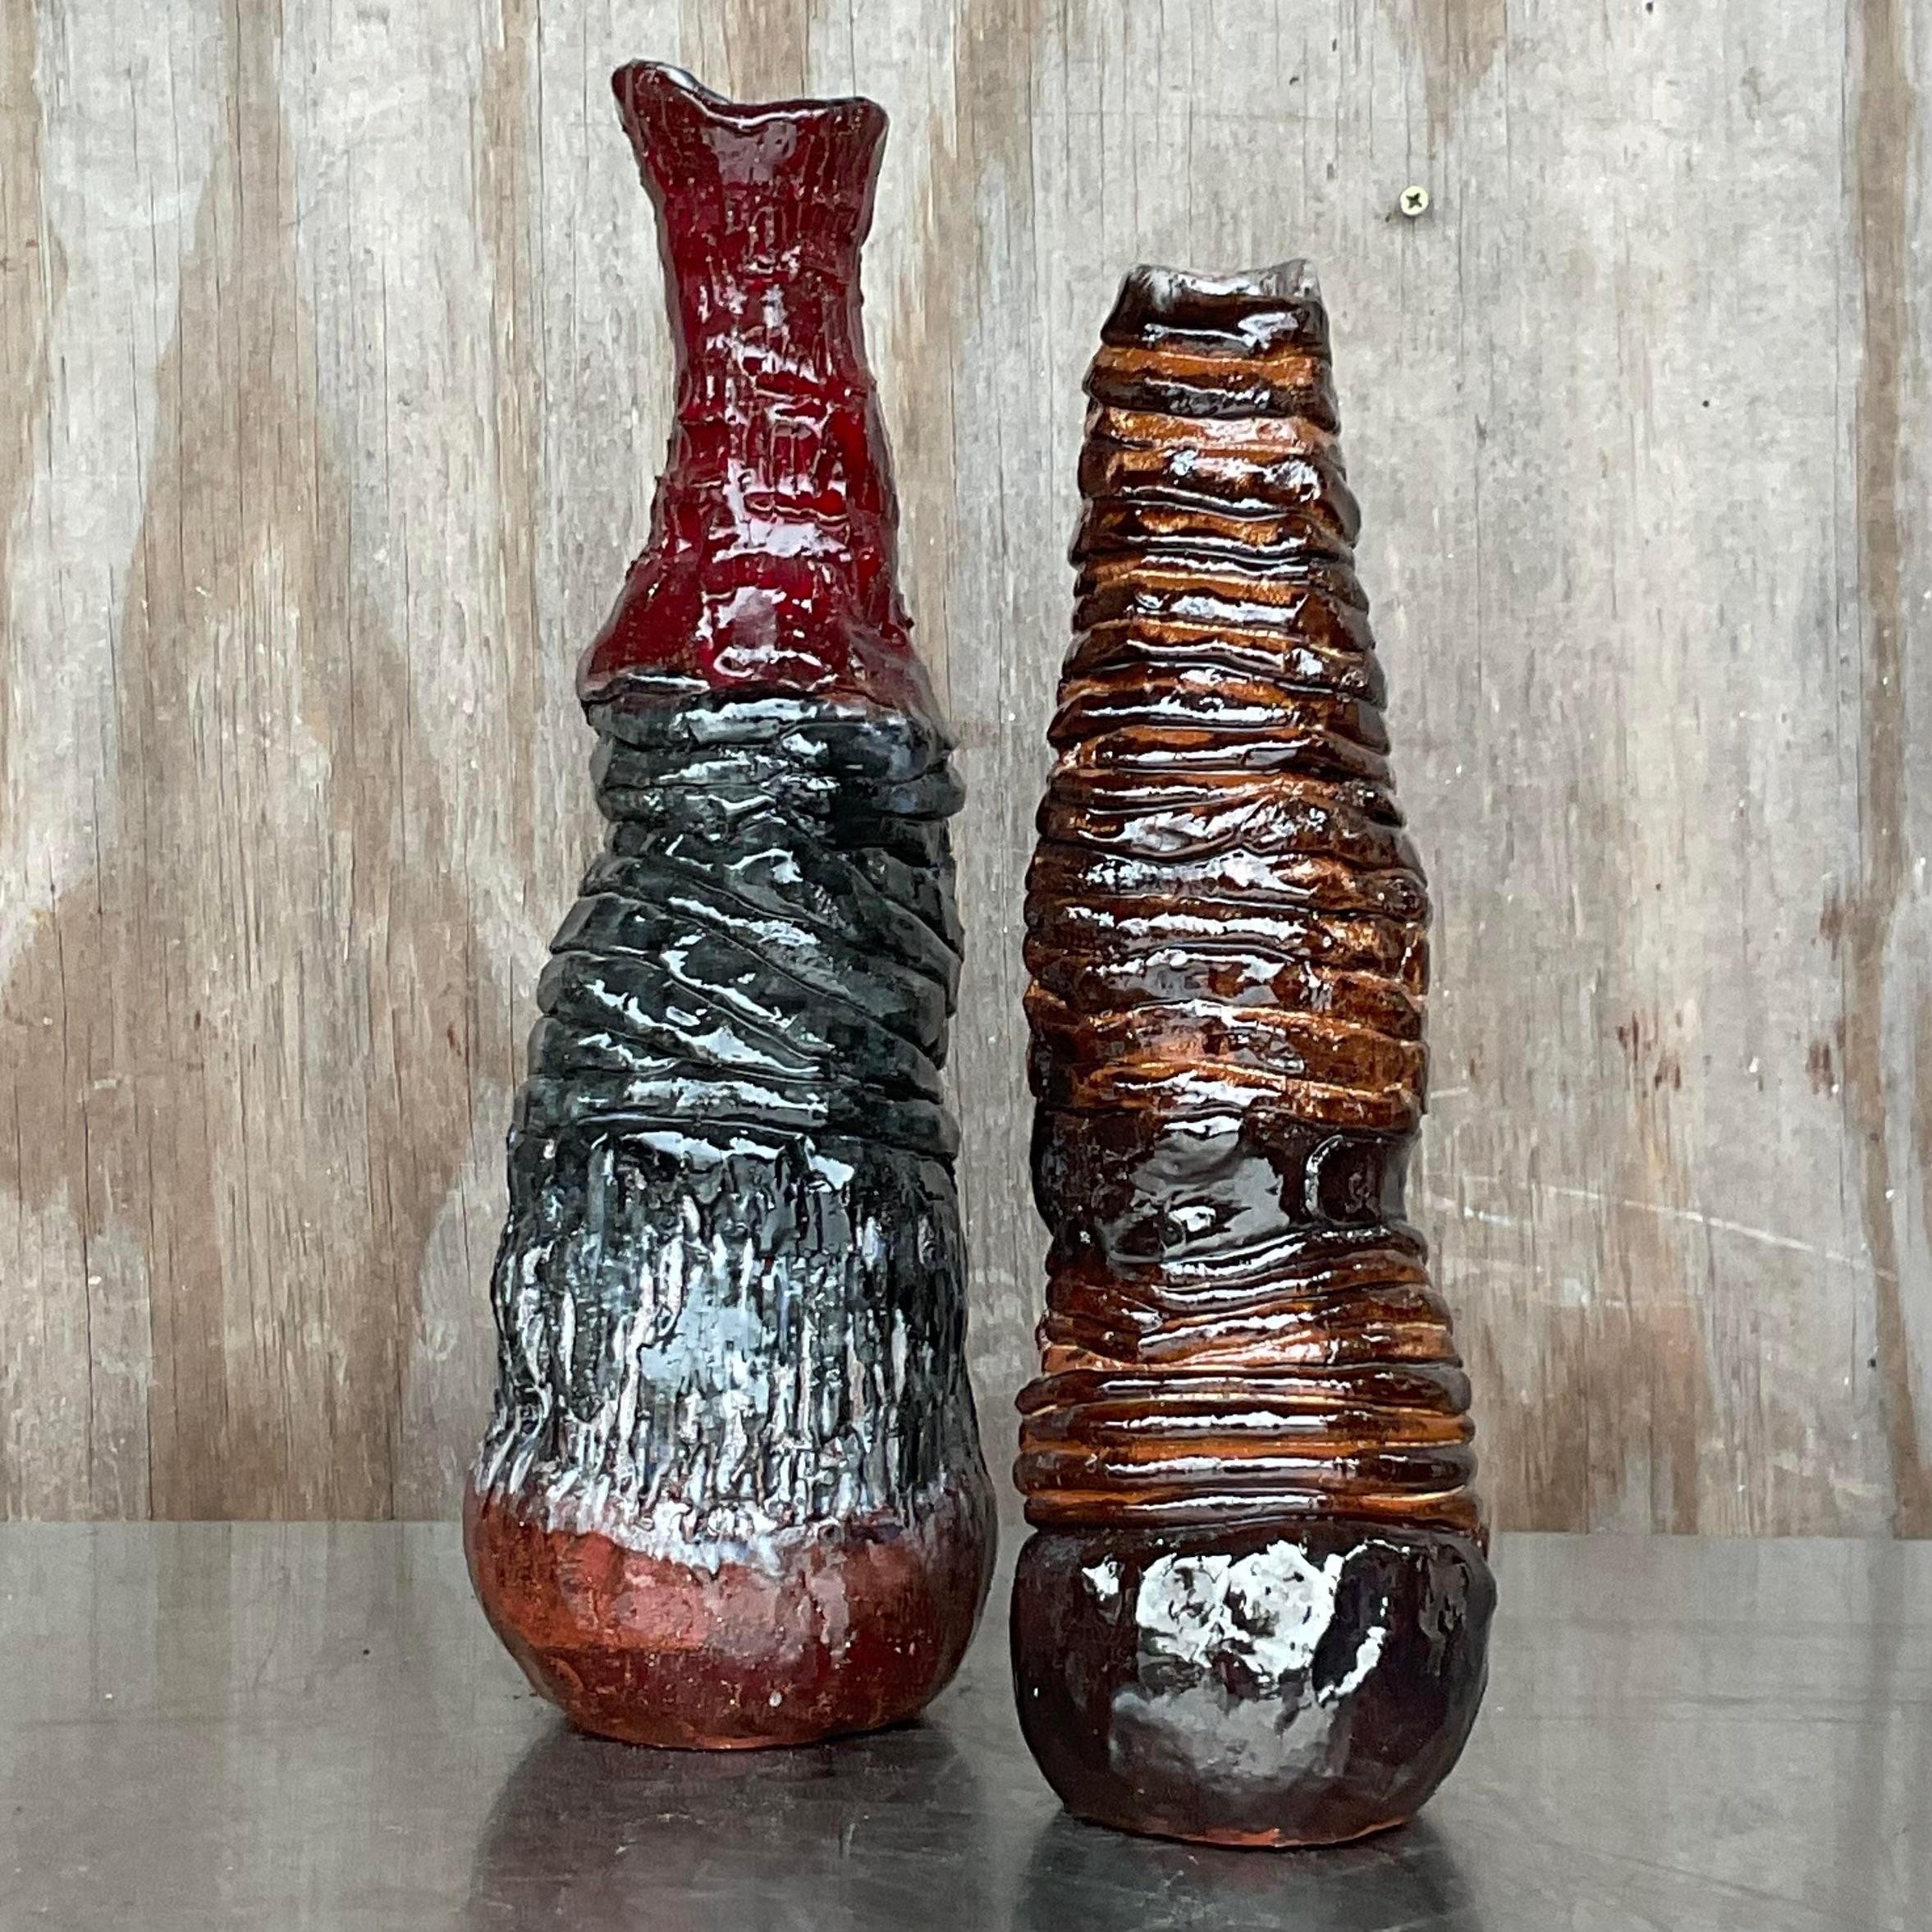 Ein fantastisches Paar Keramikvasen von Boho Studio. Schöne handgefertigte Stücke in schönen warmen Farben. Signiert vom Künstler. Erworben aus einem Nachlass in NY.